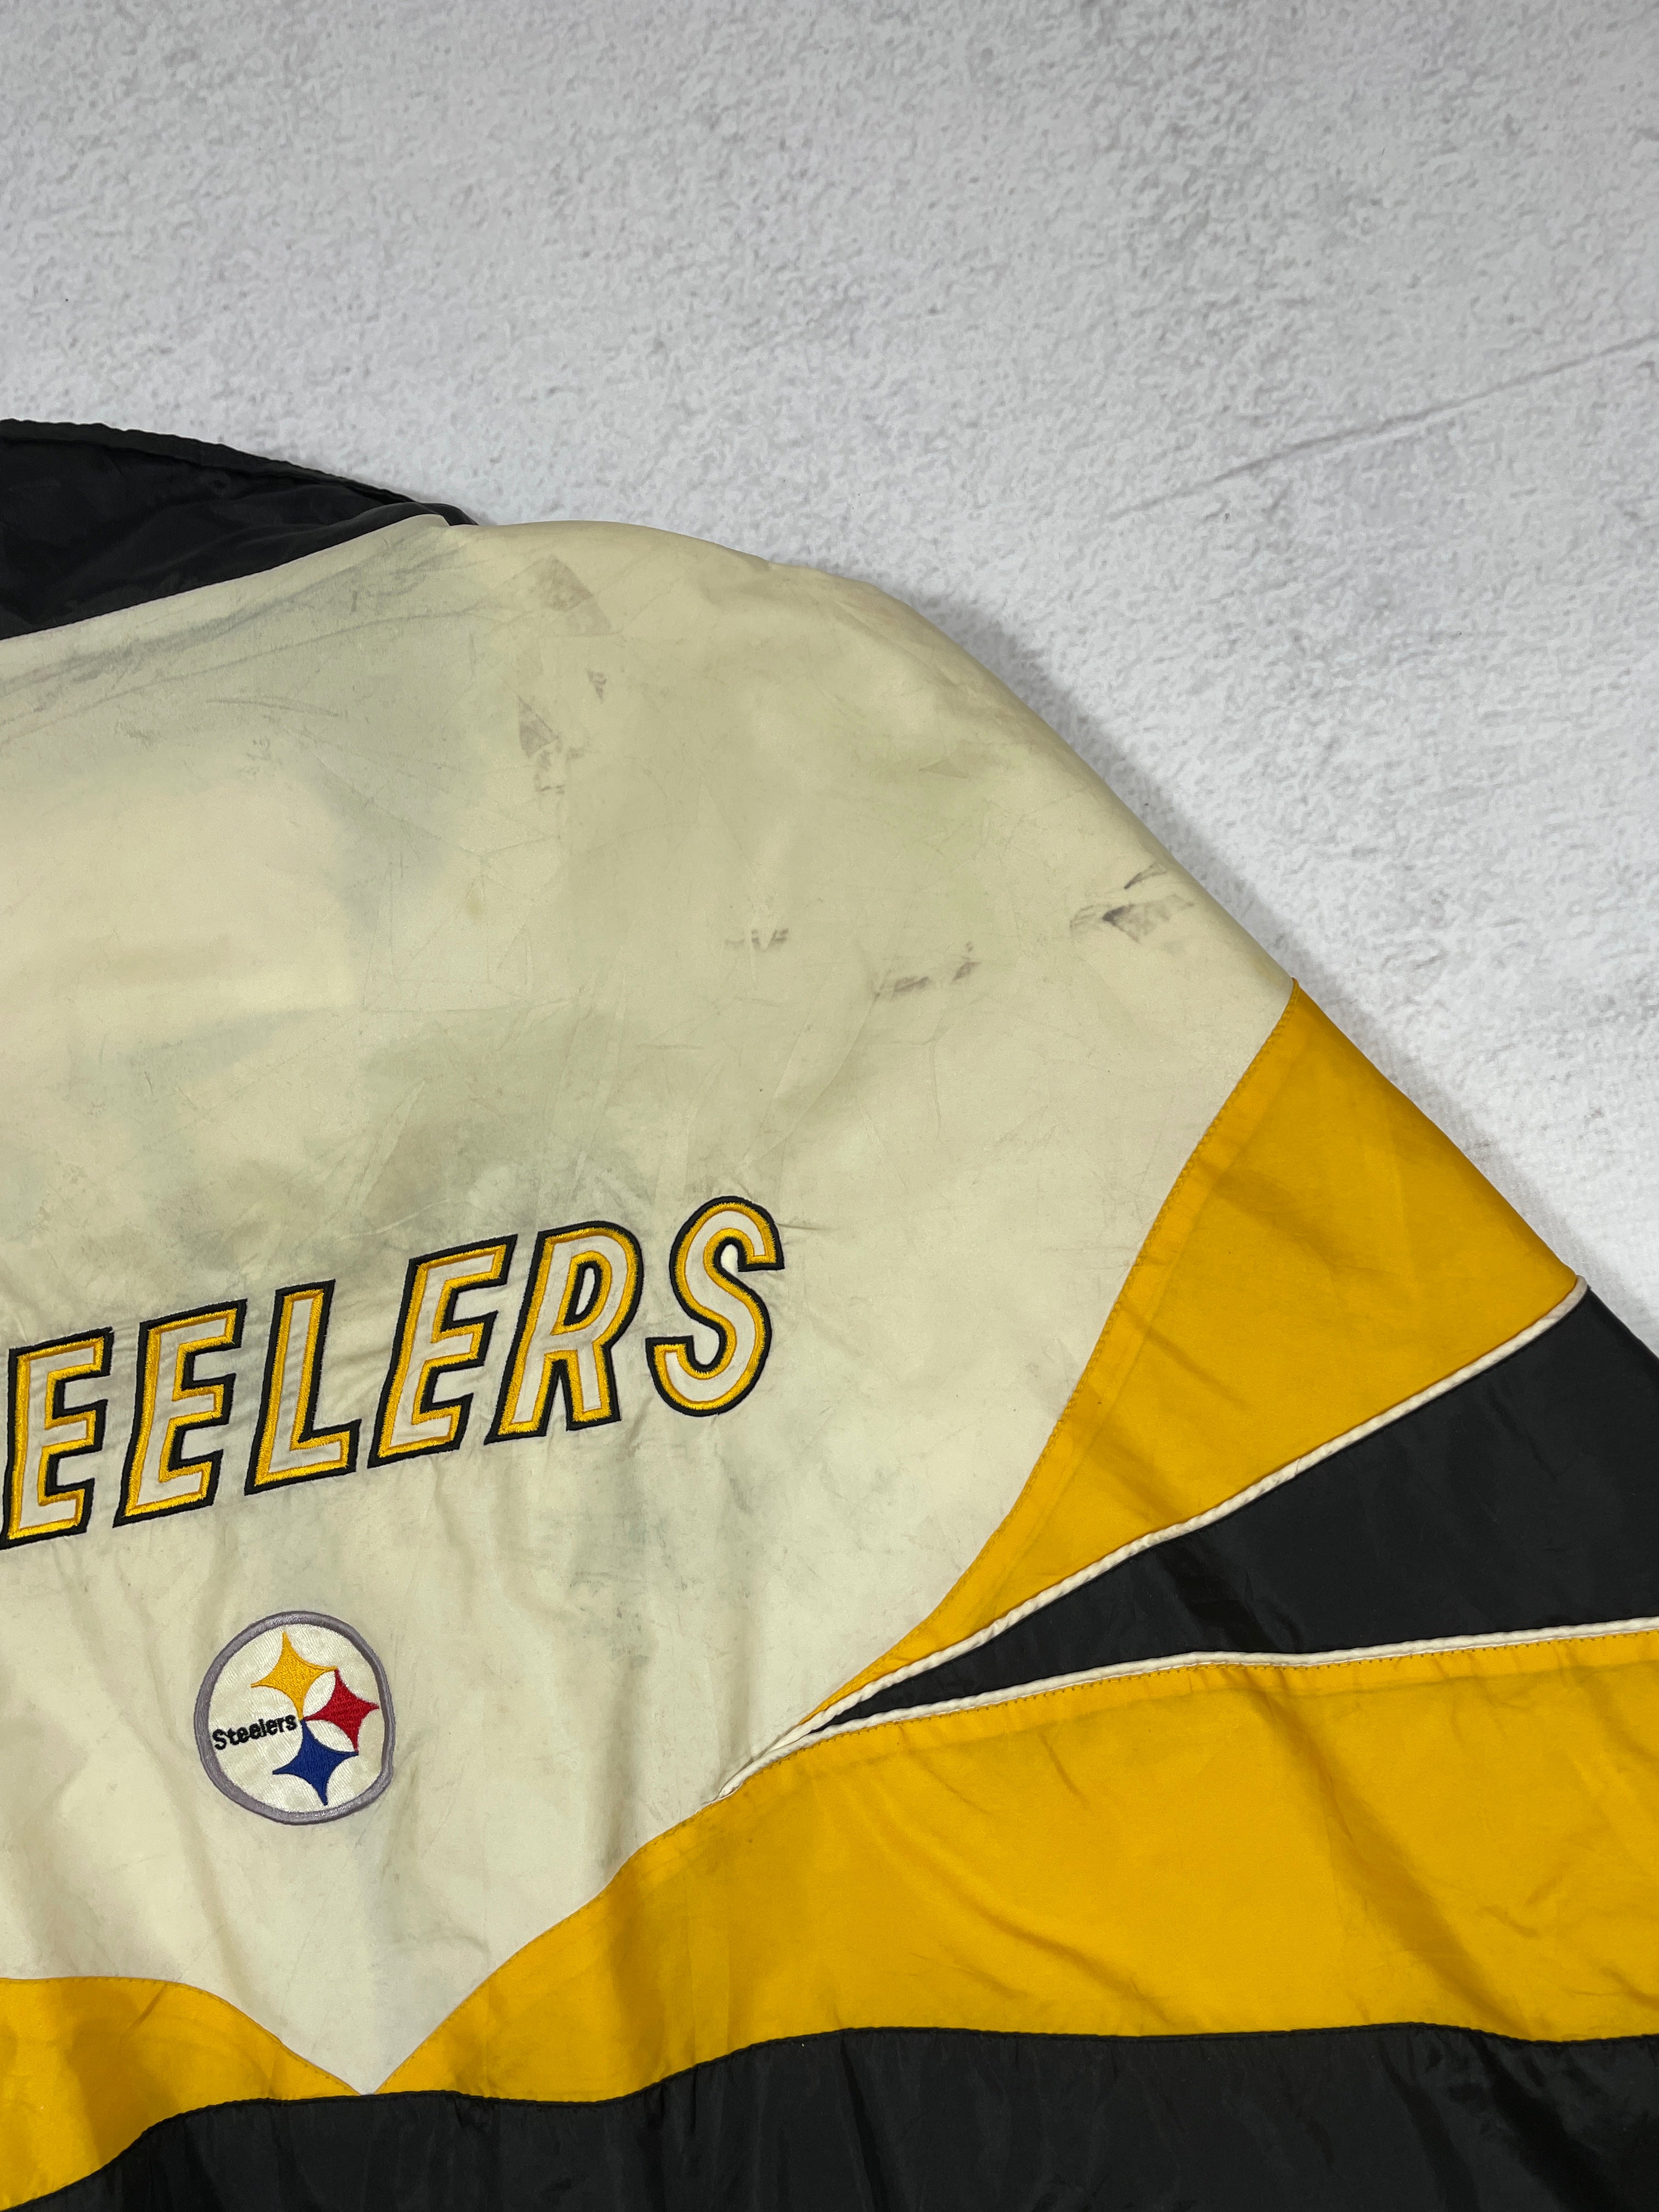 Vintage NFL Pittsburgh Steelers Windbreaker - Men's 2XL